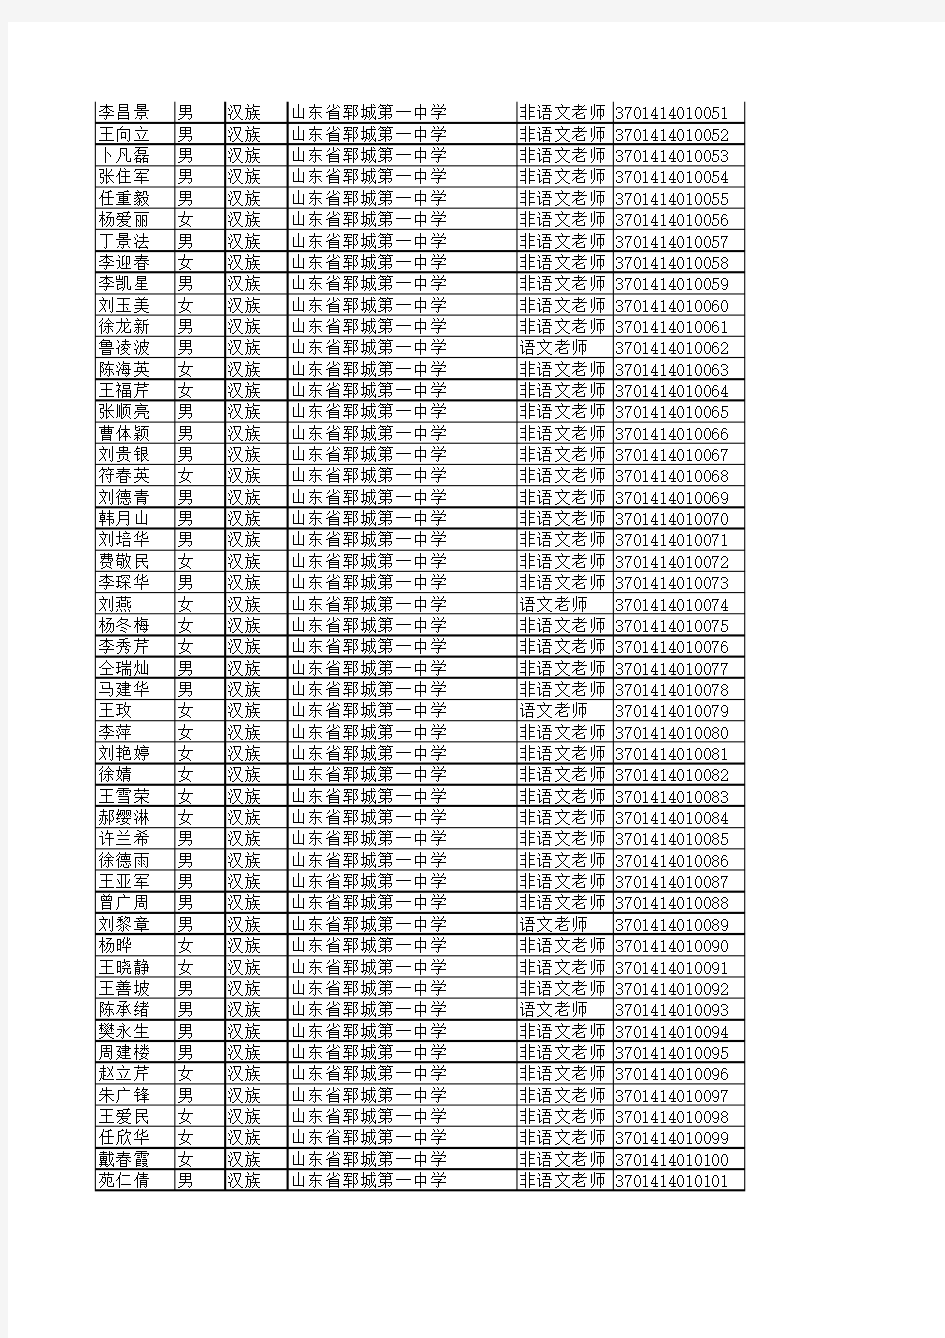 2013年郓城县教育系统普通话水平测试成绩登记表